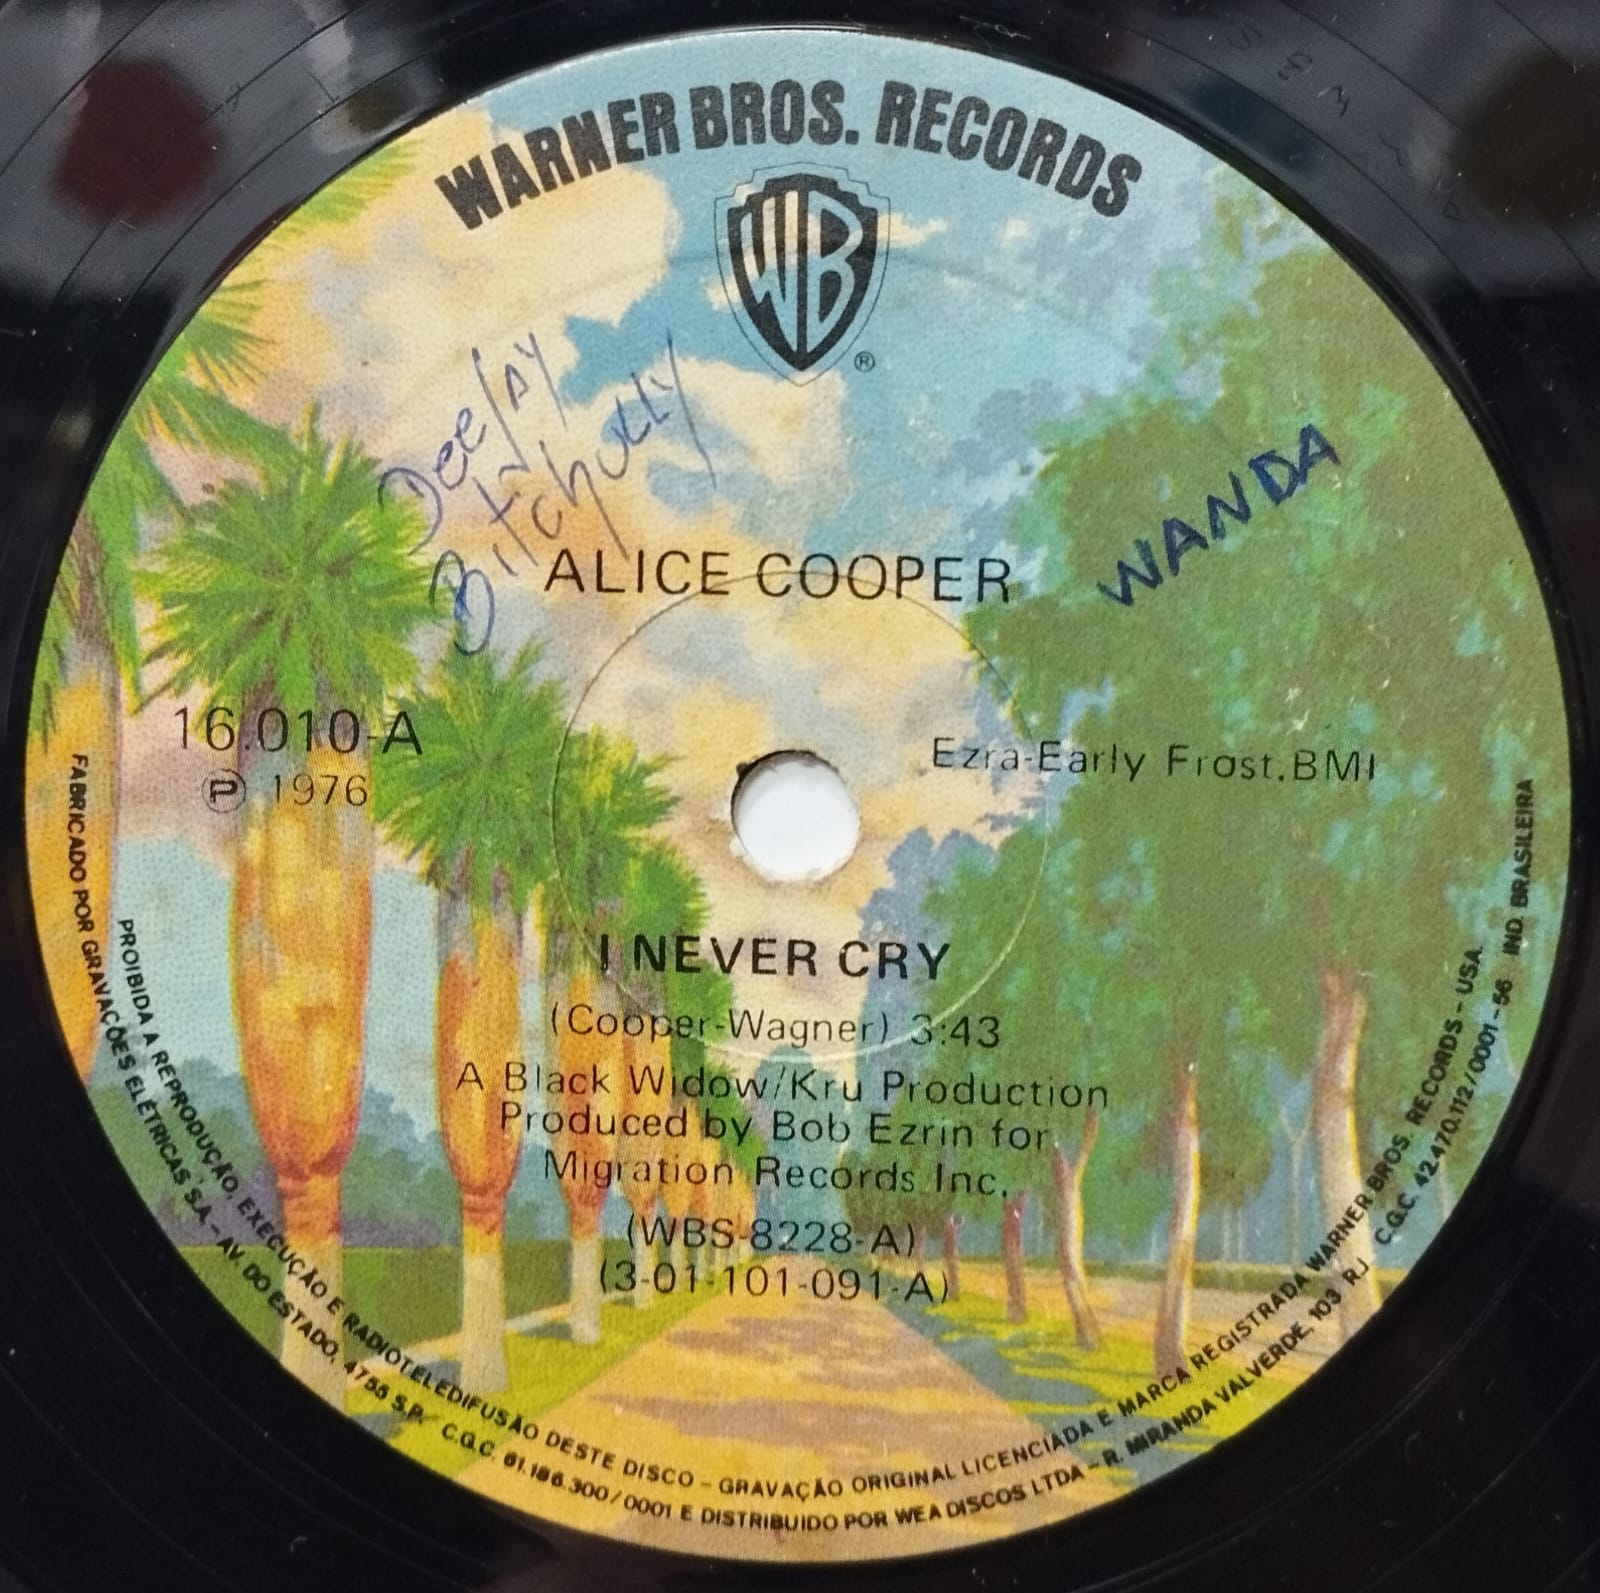 Alice Cooper - I Never Cry (Compacto)